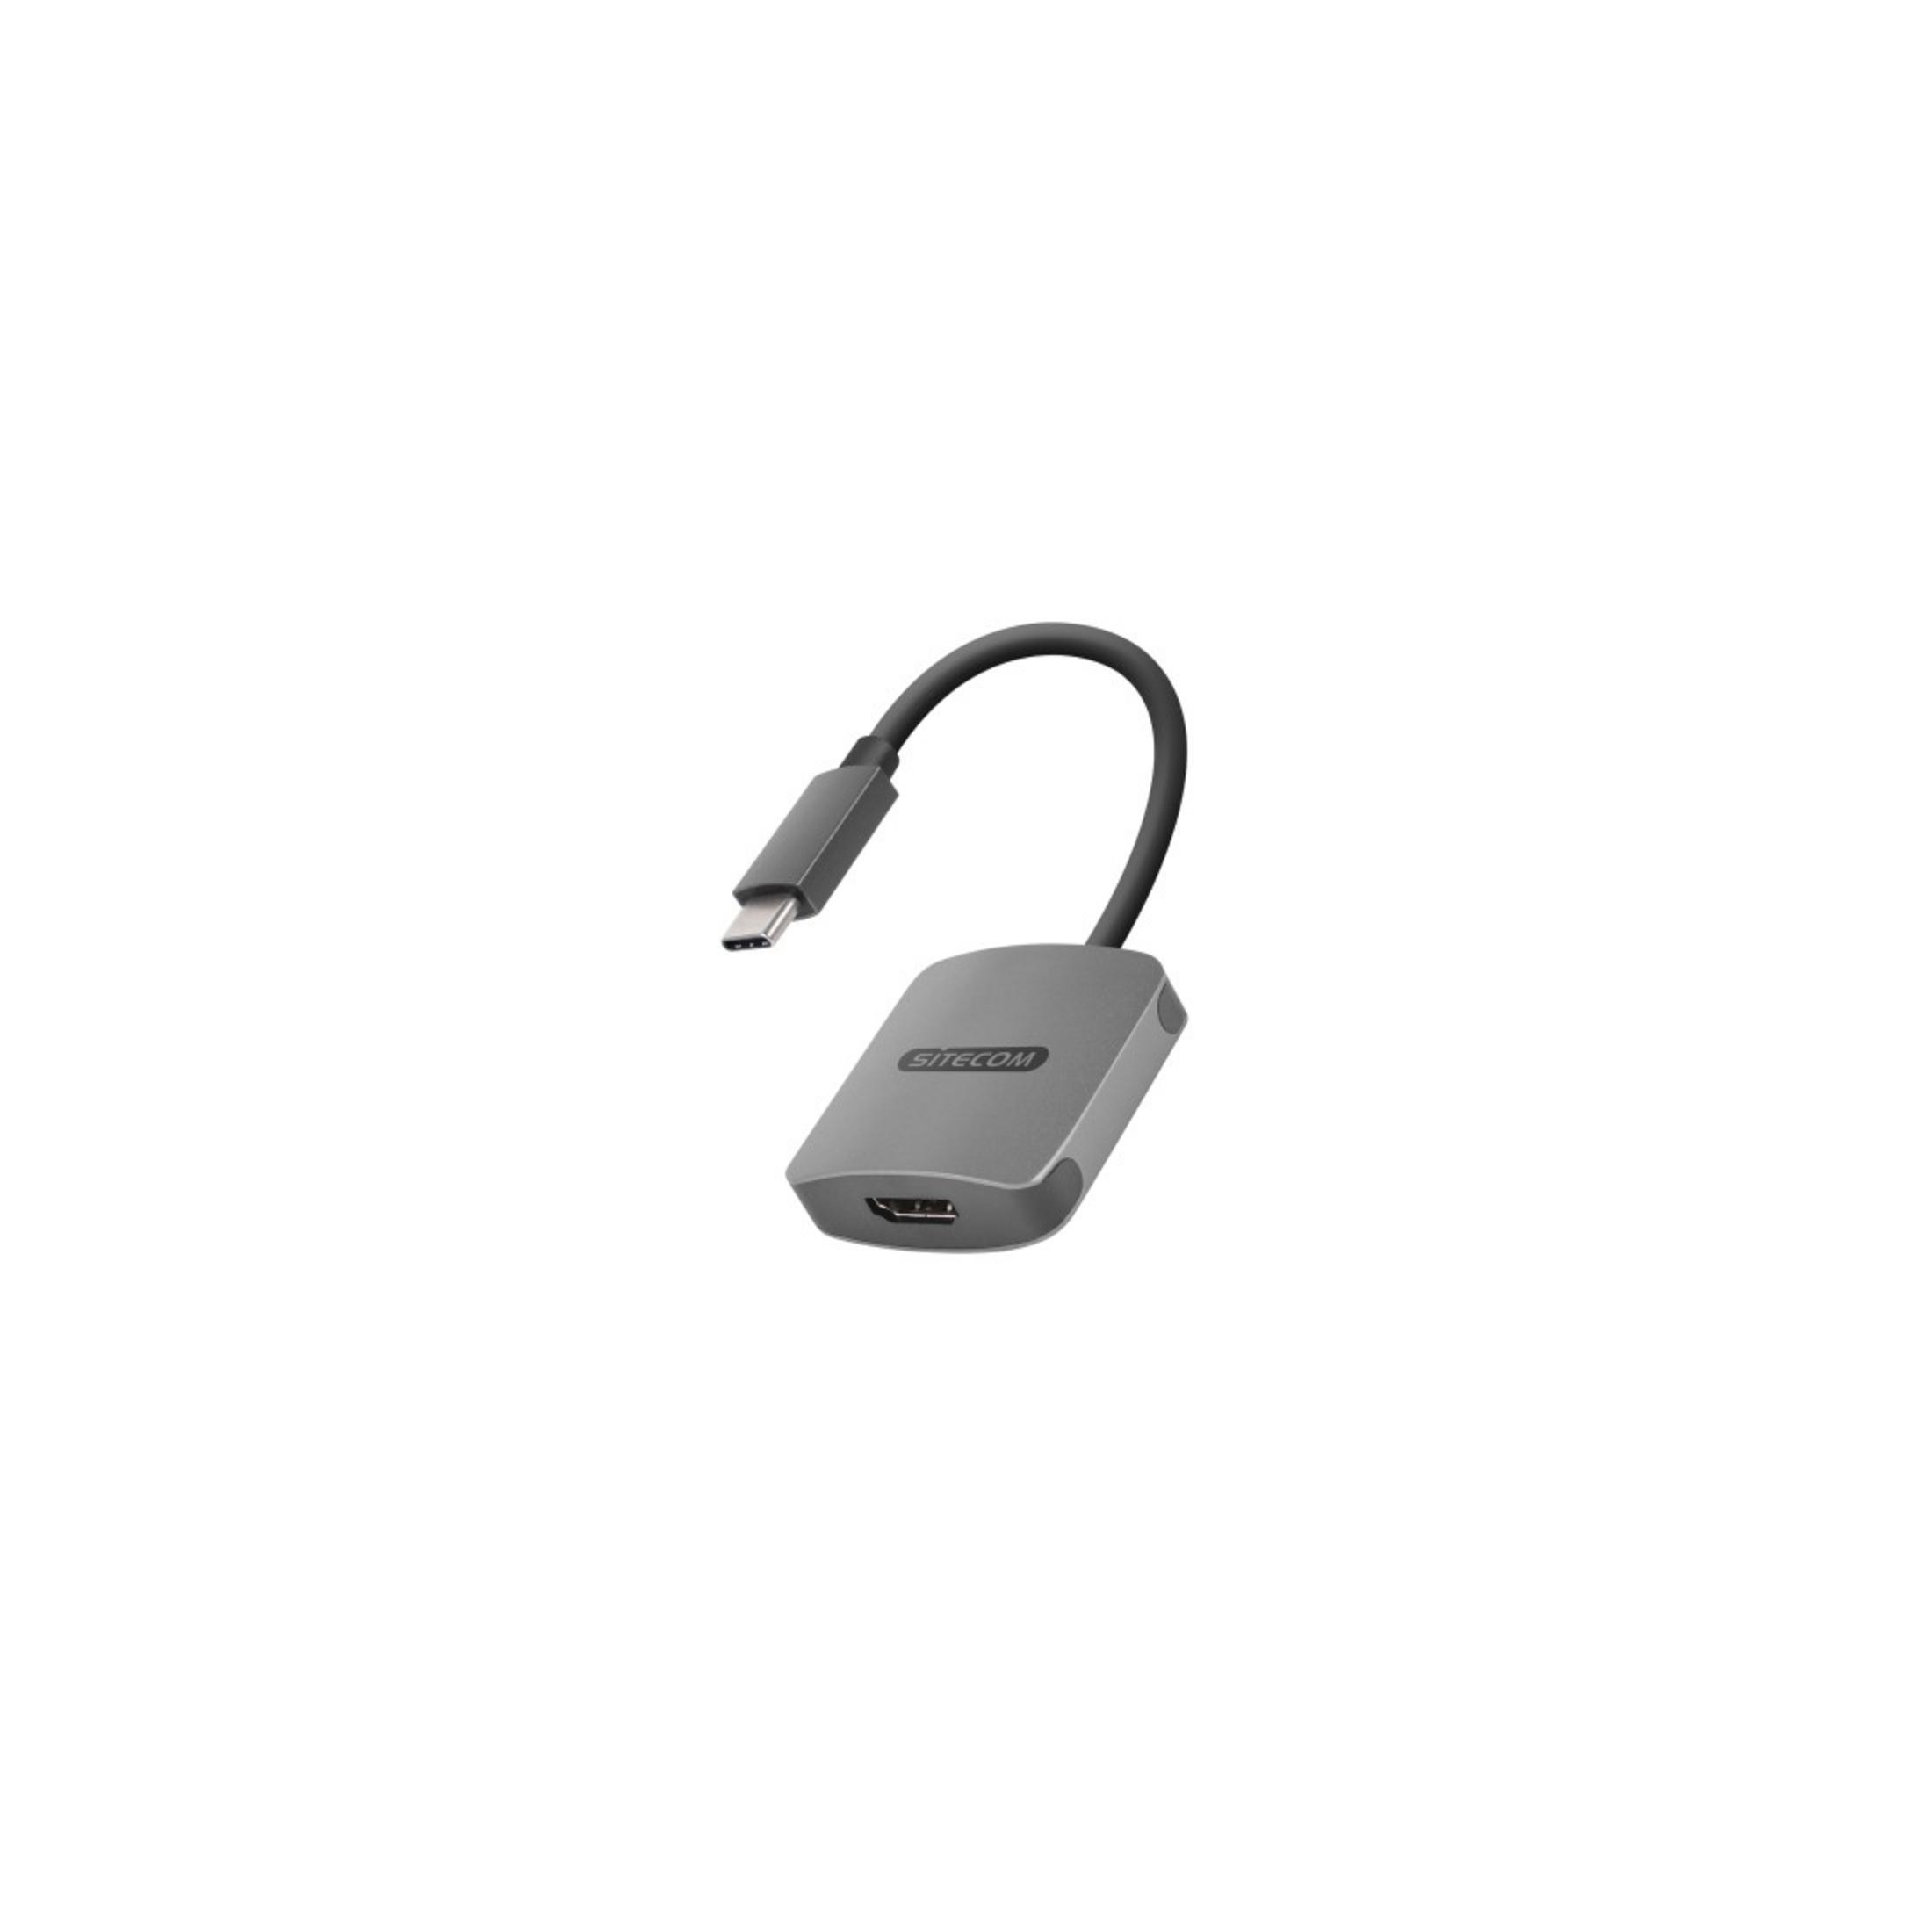 SITECOM CN-372 USB-C 3.1 USB Silber Adapter, ADAPT. TO HDMI